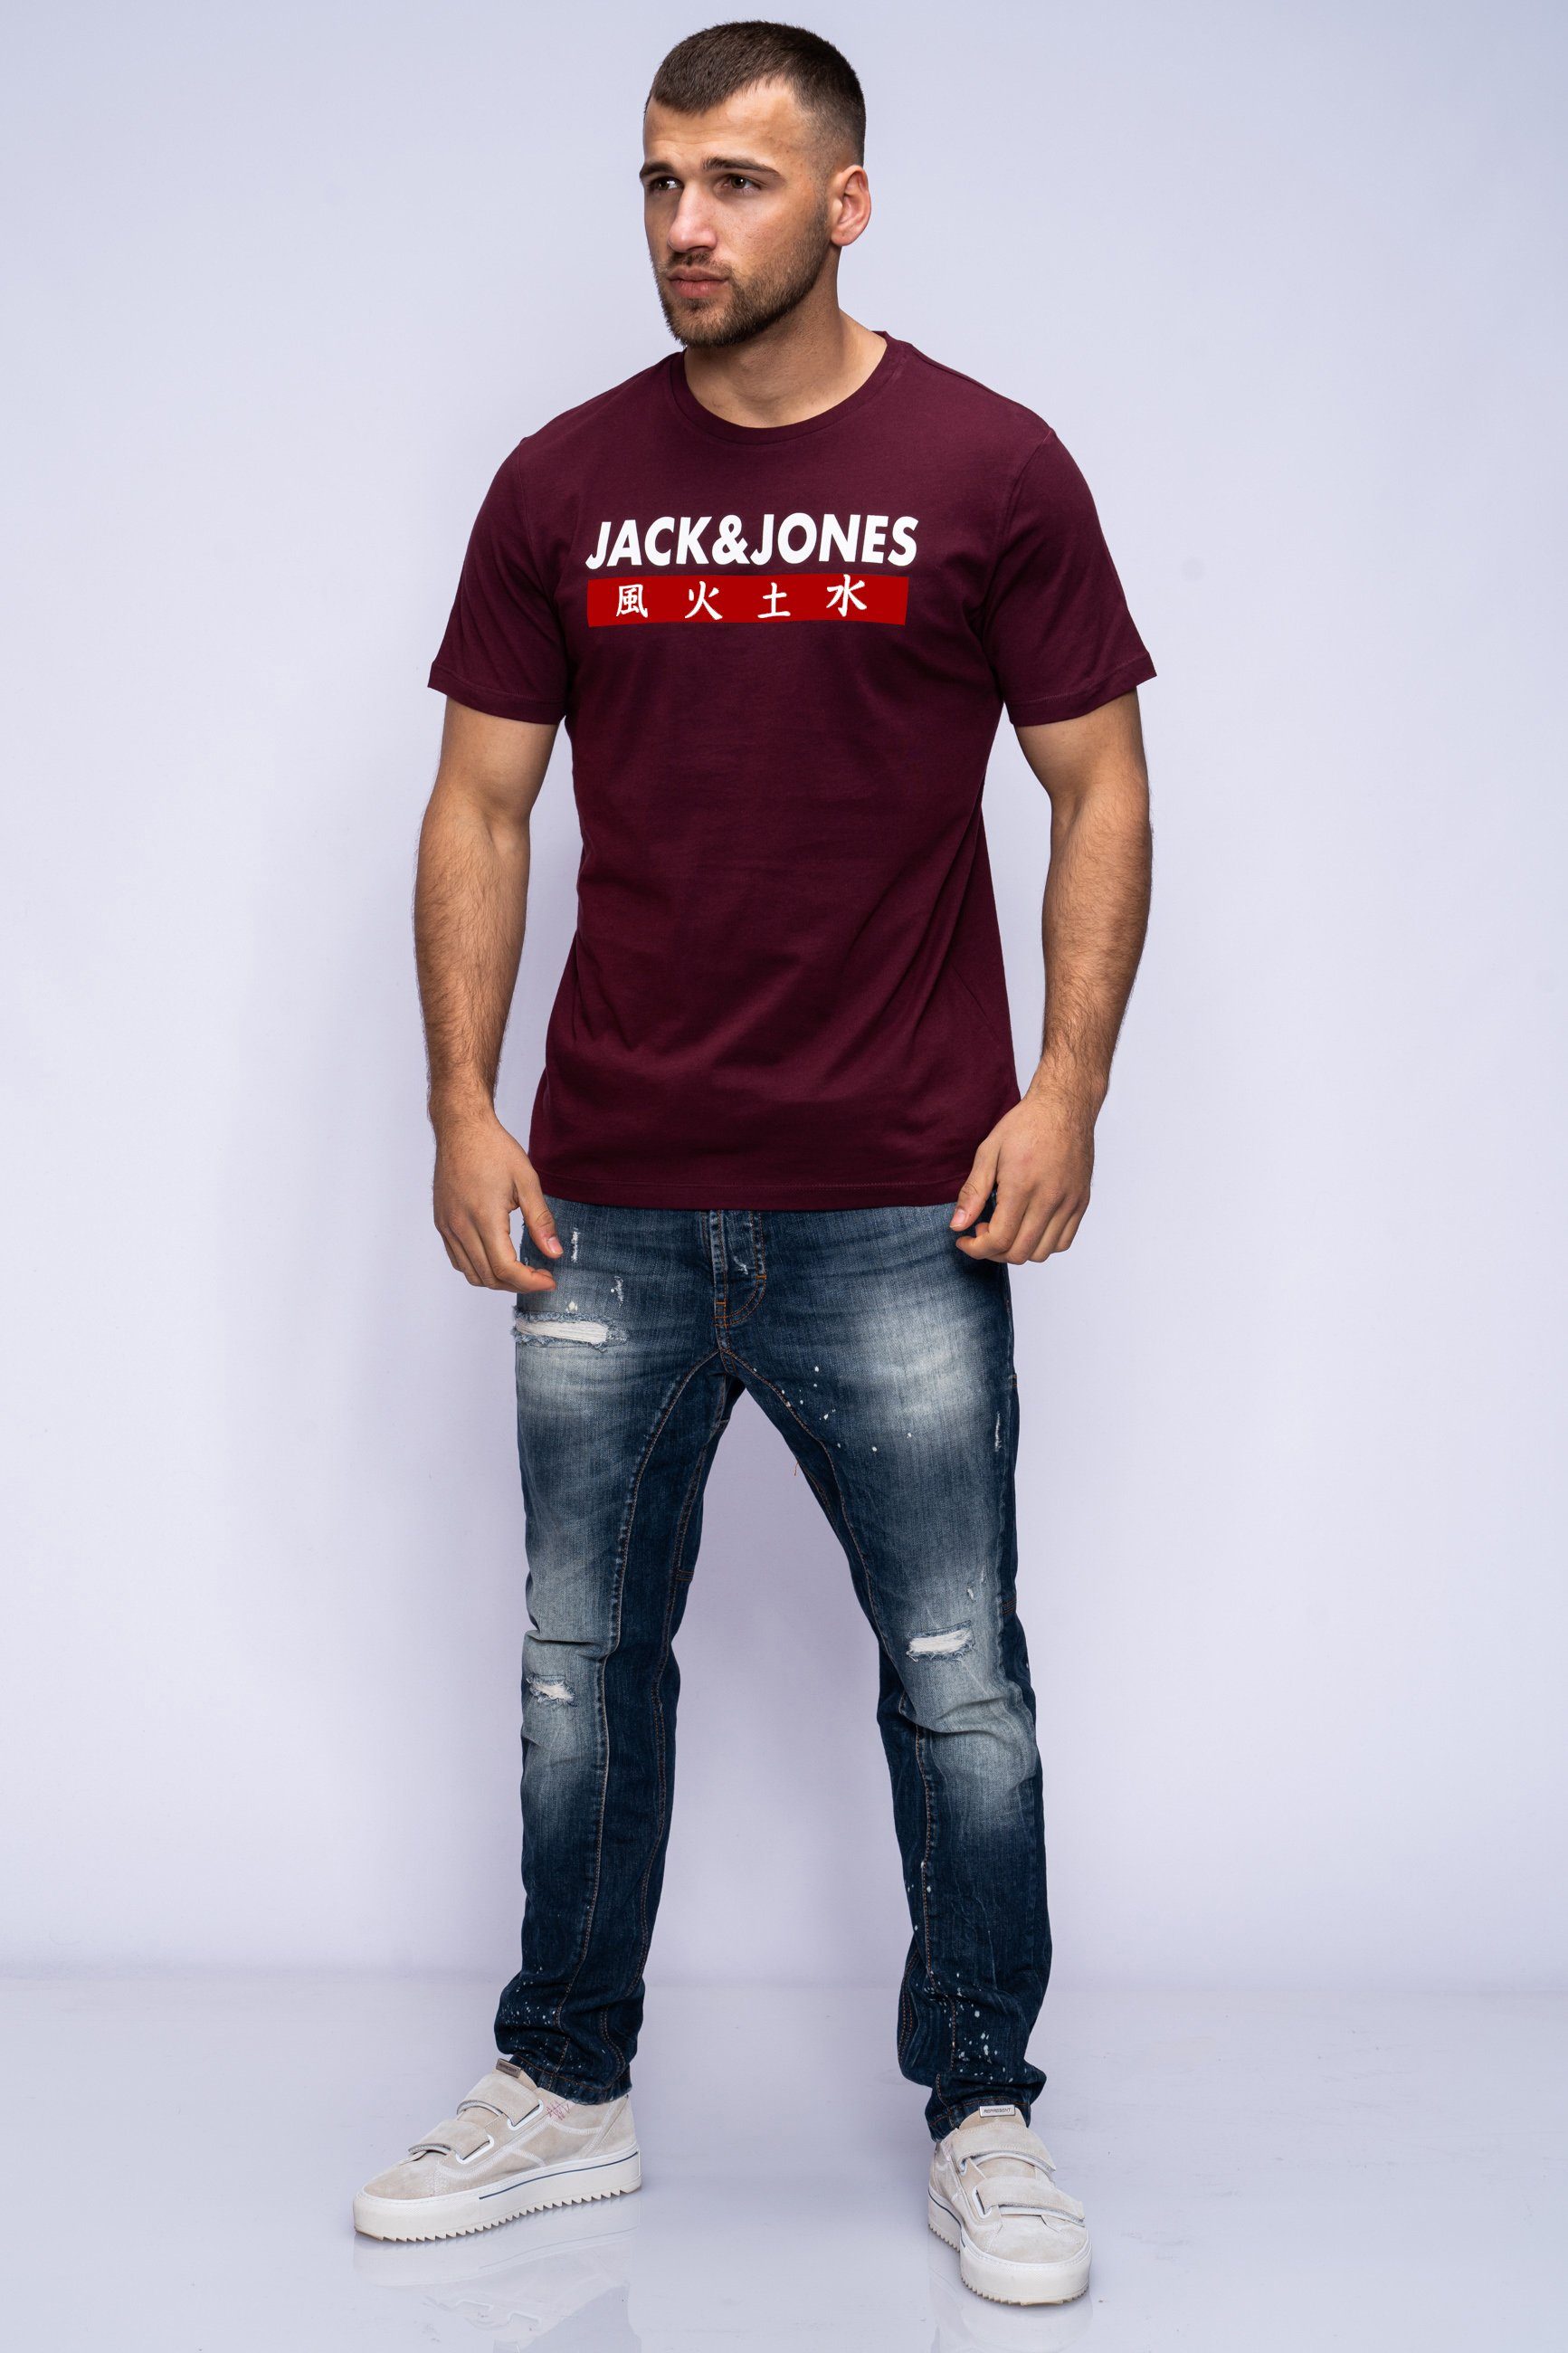 Port NECK Print-Shirt TEE Jones Royale CREW ELEMENTS Jack & SS